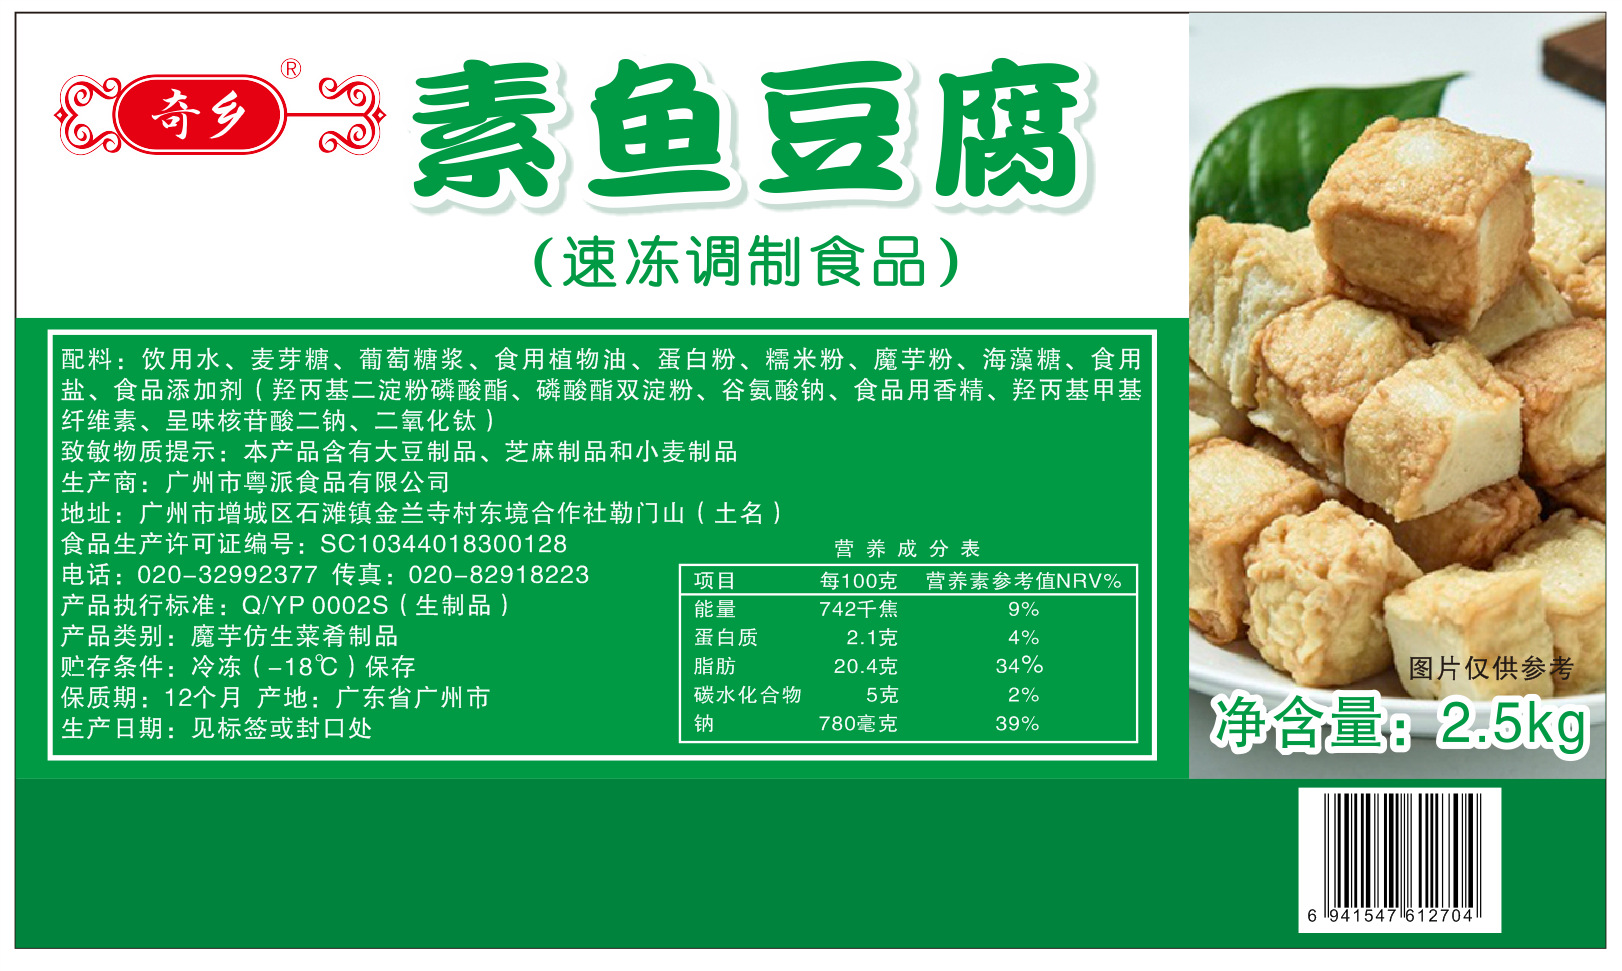 粤派食品奇乡牌素食素鱼豆腐餐饮装面筋豆类制品素食批发出口